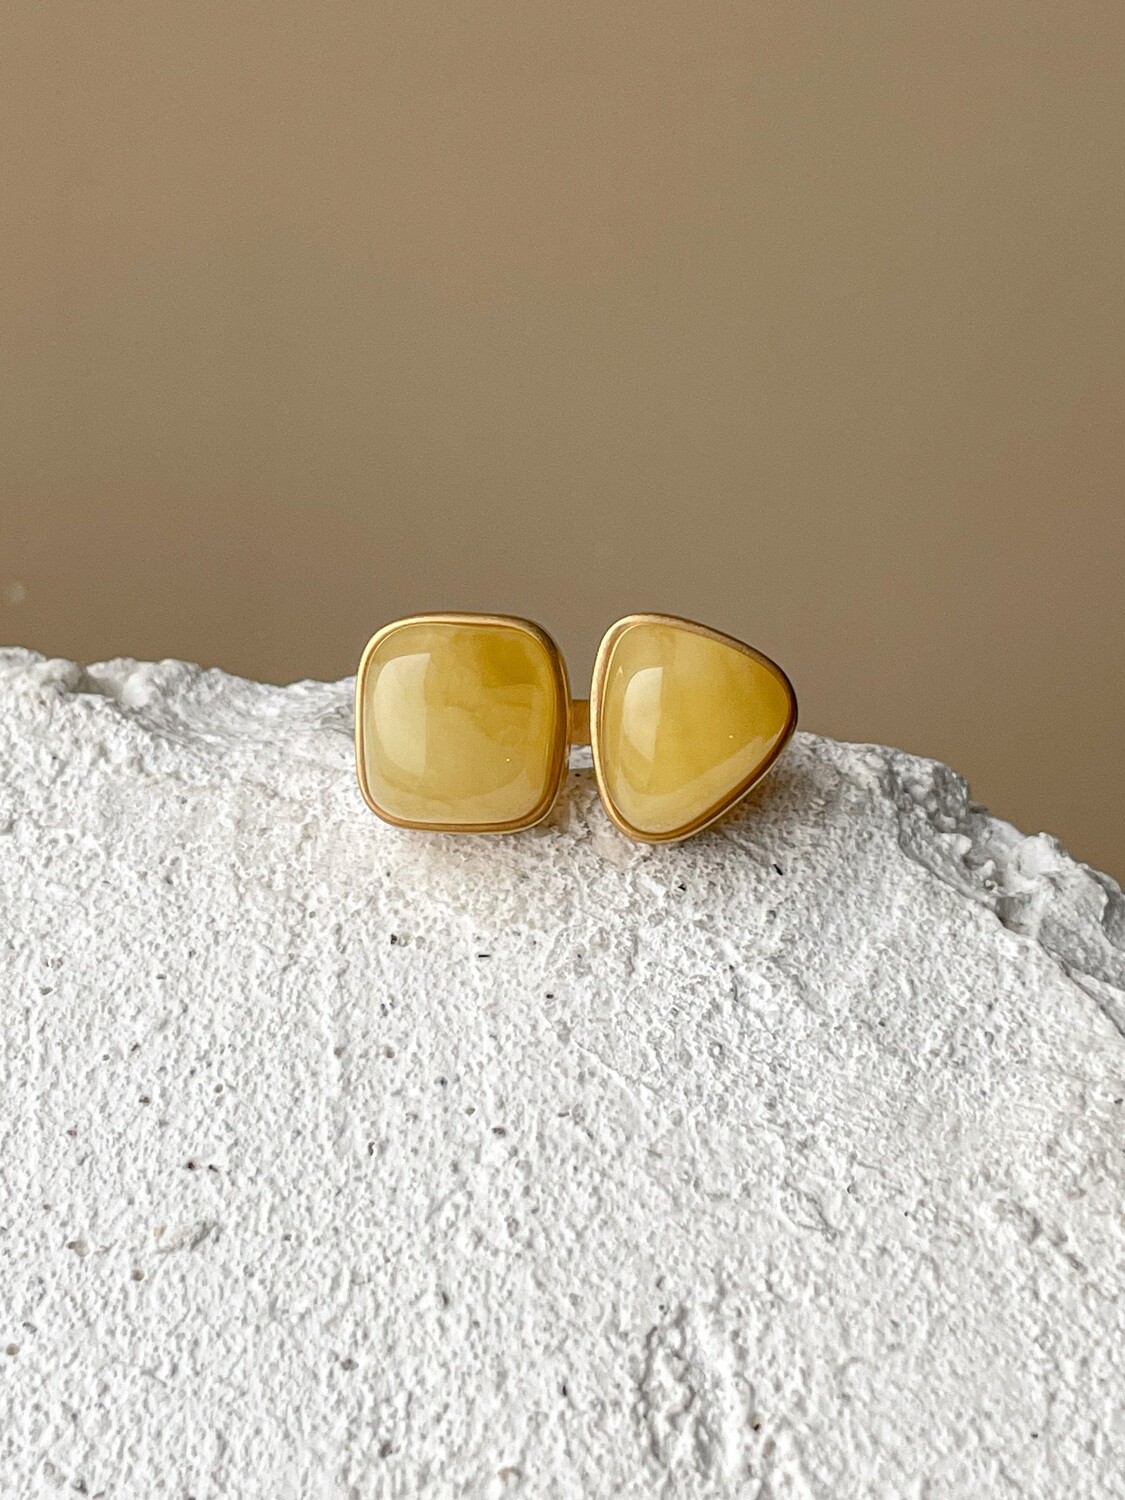 Двойное кольцо с медовым янтарем, размер 17,5